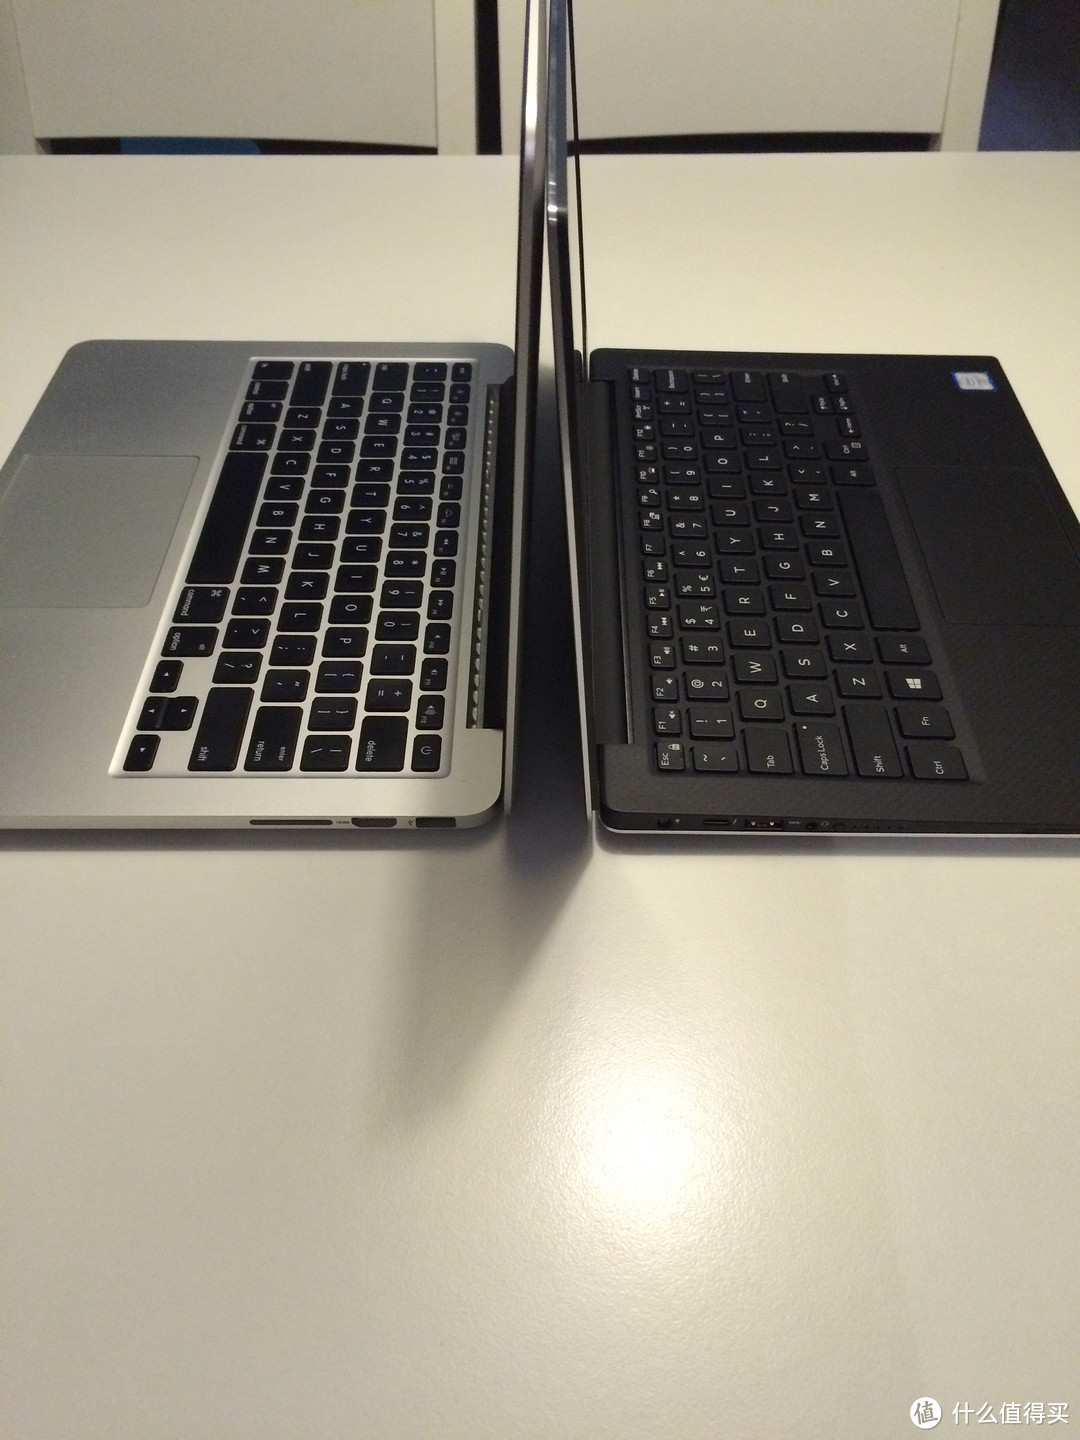 粗谈DELL 戴尔 XPS 笔记本电脑 与Apple 苹果 MacBook Pro 笔记本电脑